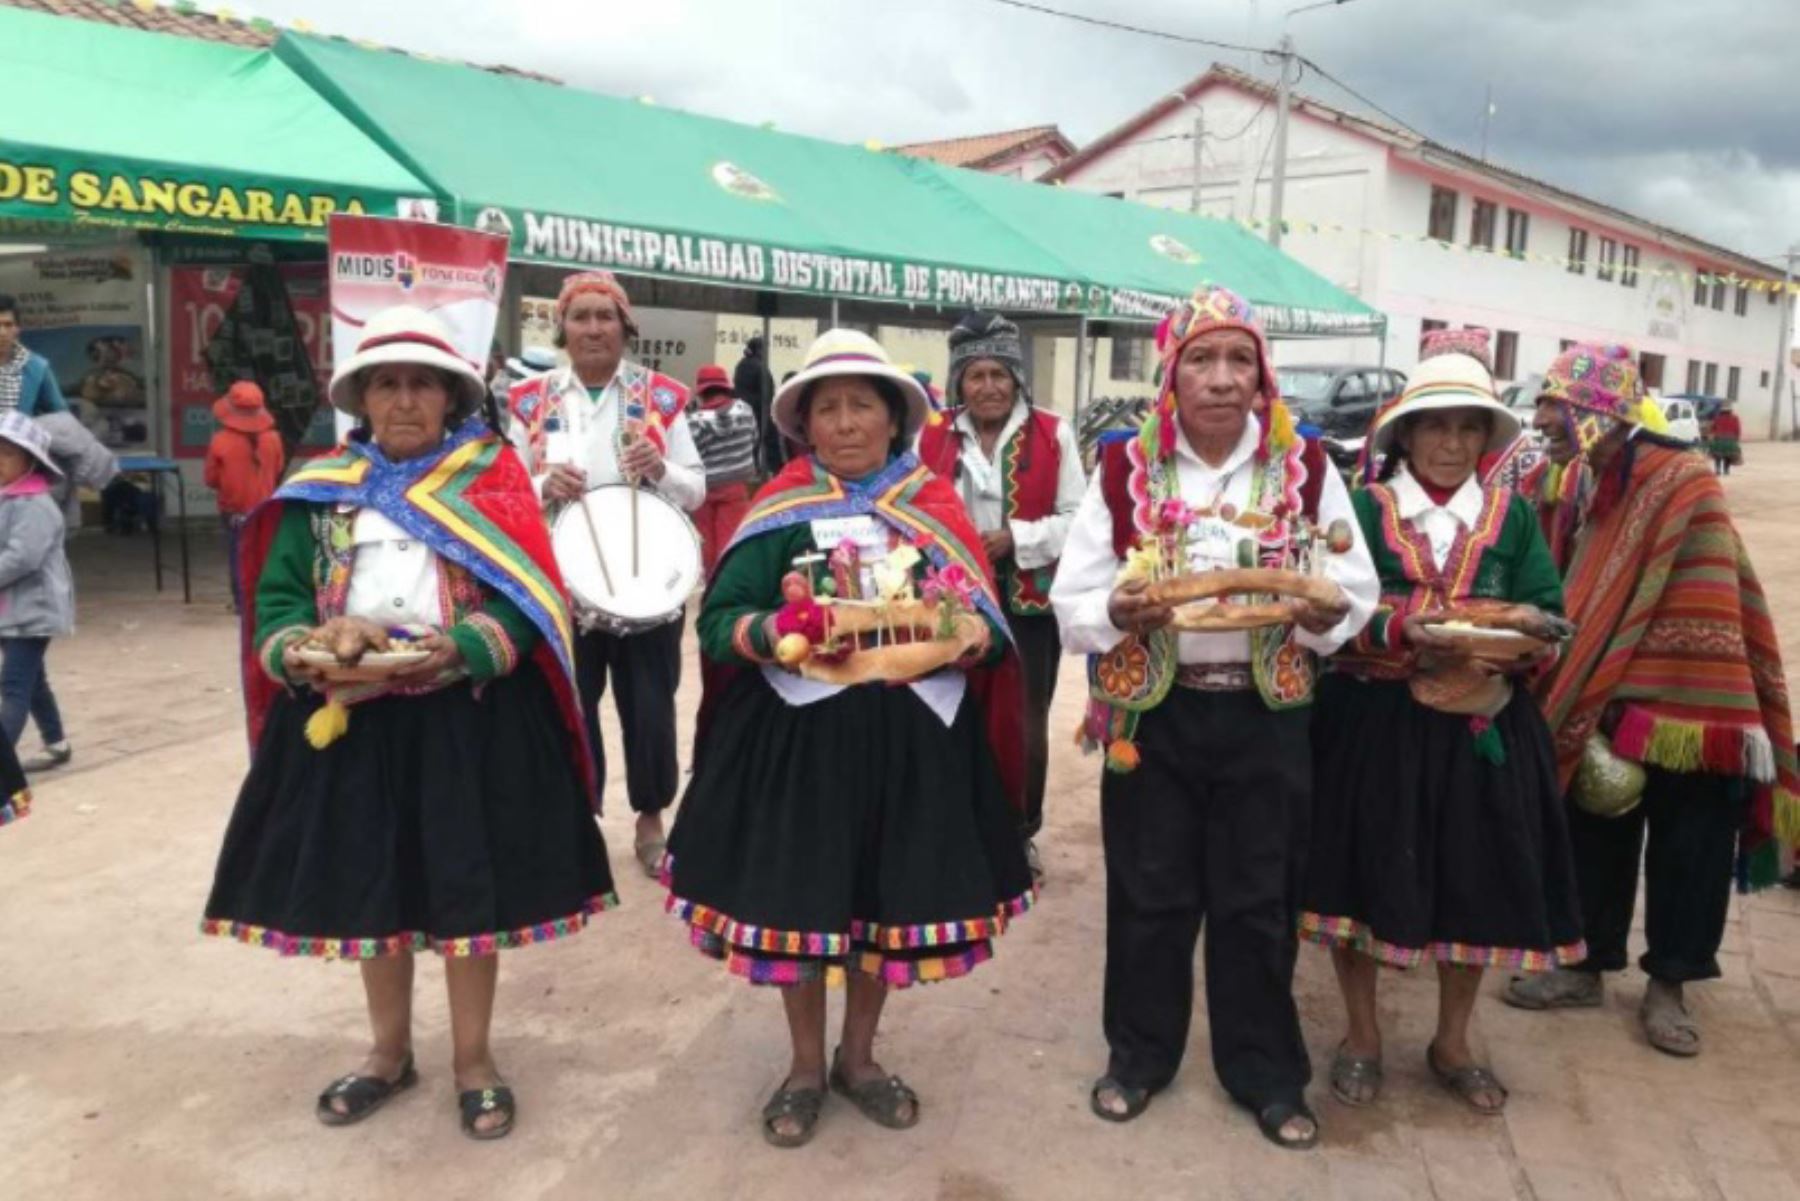 Con motivo de su 156° aniversario, el histórico distrito de Sangarará, ubicado en la provincia de Acomayo, región Cusco, fue escenario del Primer Encuentro de Saberes Productivos, donde los usuarios del Programa Nacional de Asistencia Solidaria Pensión 65, compartieron sus prácticas y conocimientos ancestrales con las nuevas generaciones